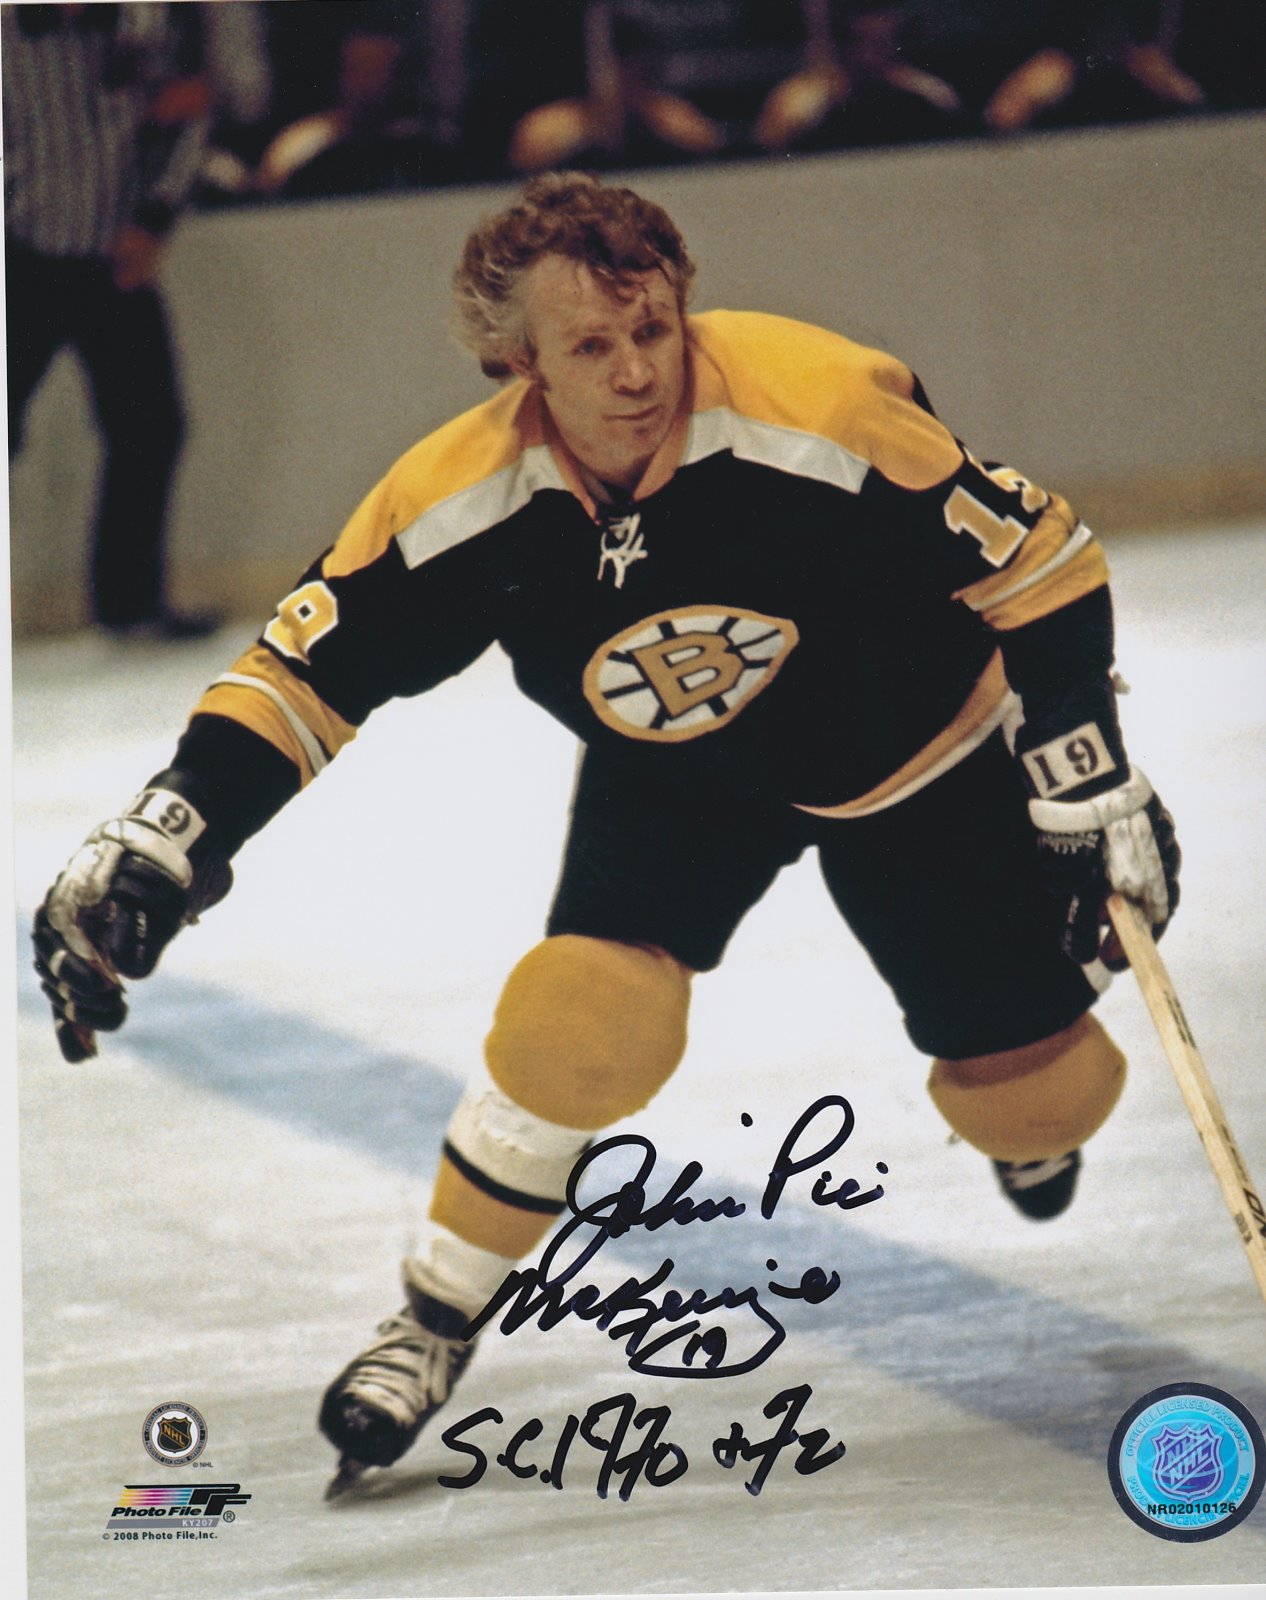 John "Pie" McKenzie Autograph 8x10 Color photo Boston Bruins